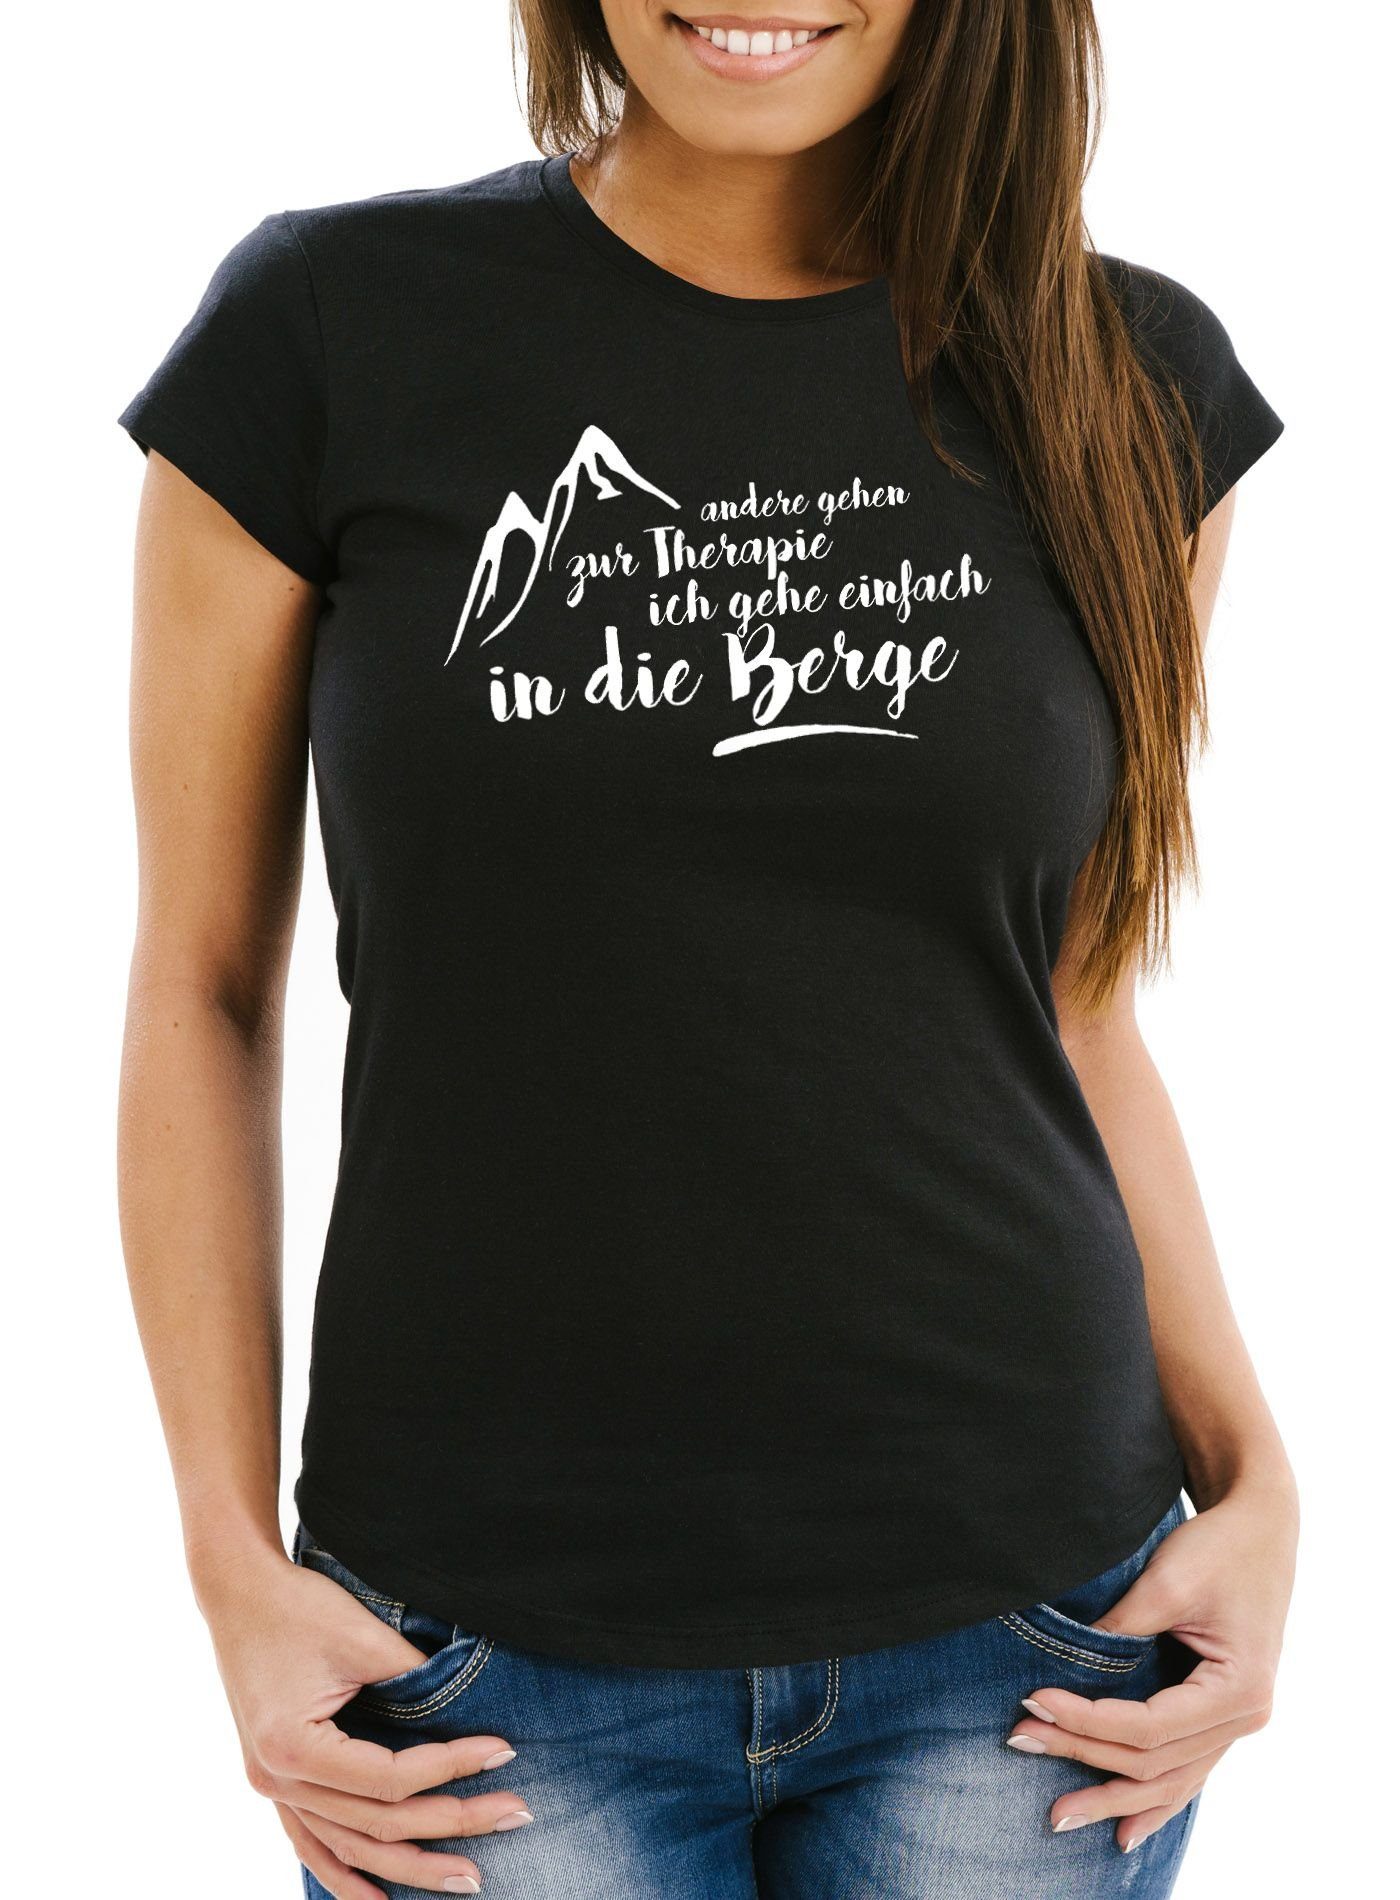 andere Print ich Fit MoonWorks Damen T-Shirt gehe gehen Moonworks® einfach die Slim zur Wandern schwarz Print-Shirt mit Therapie, in Berge